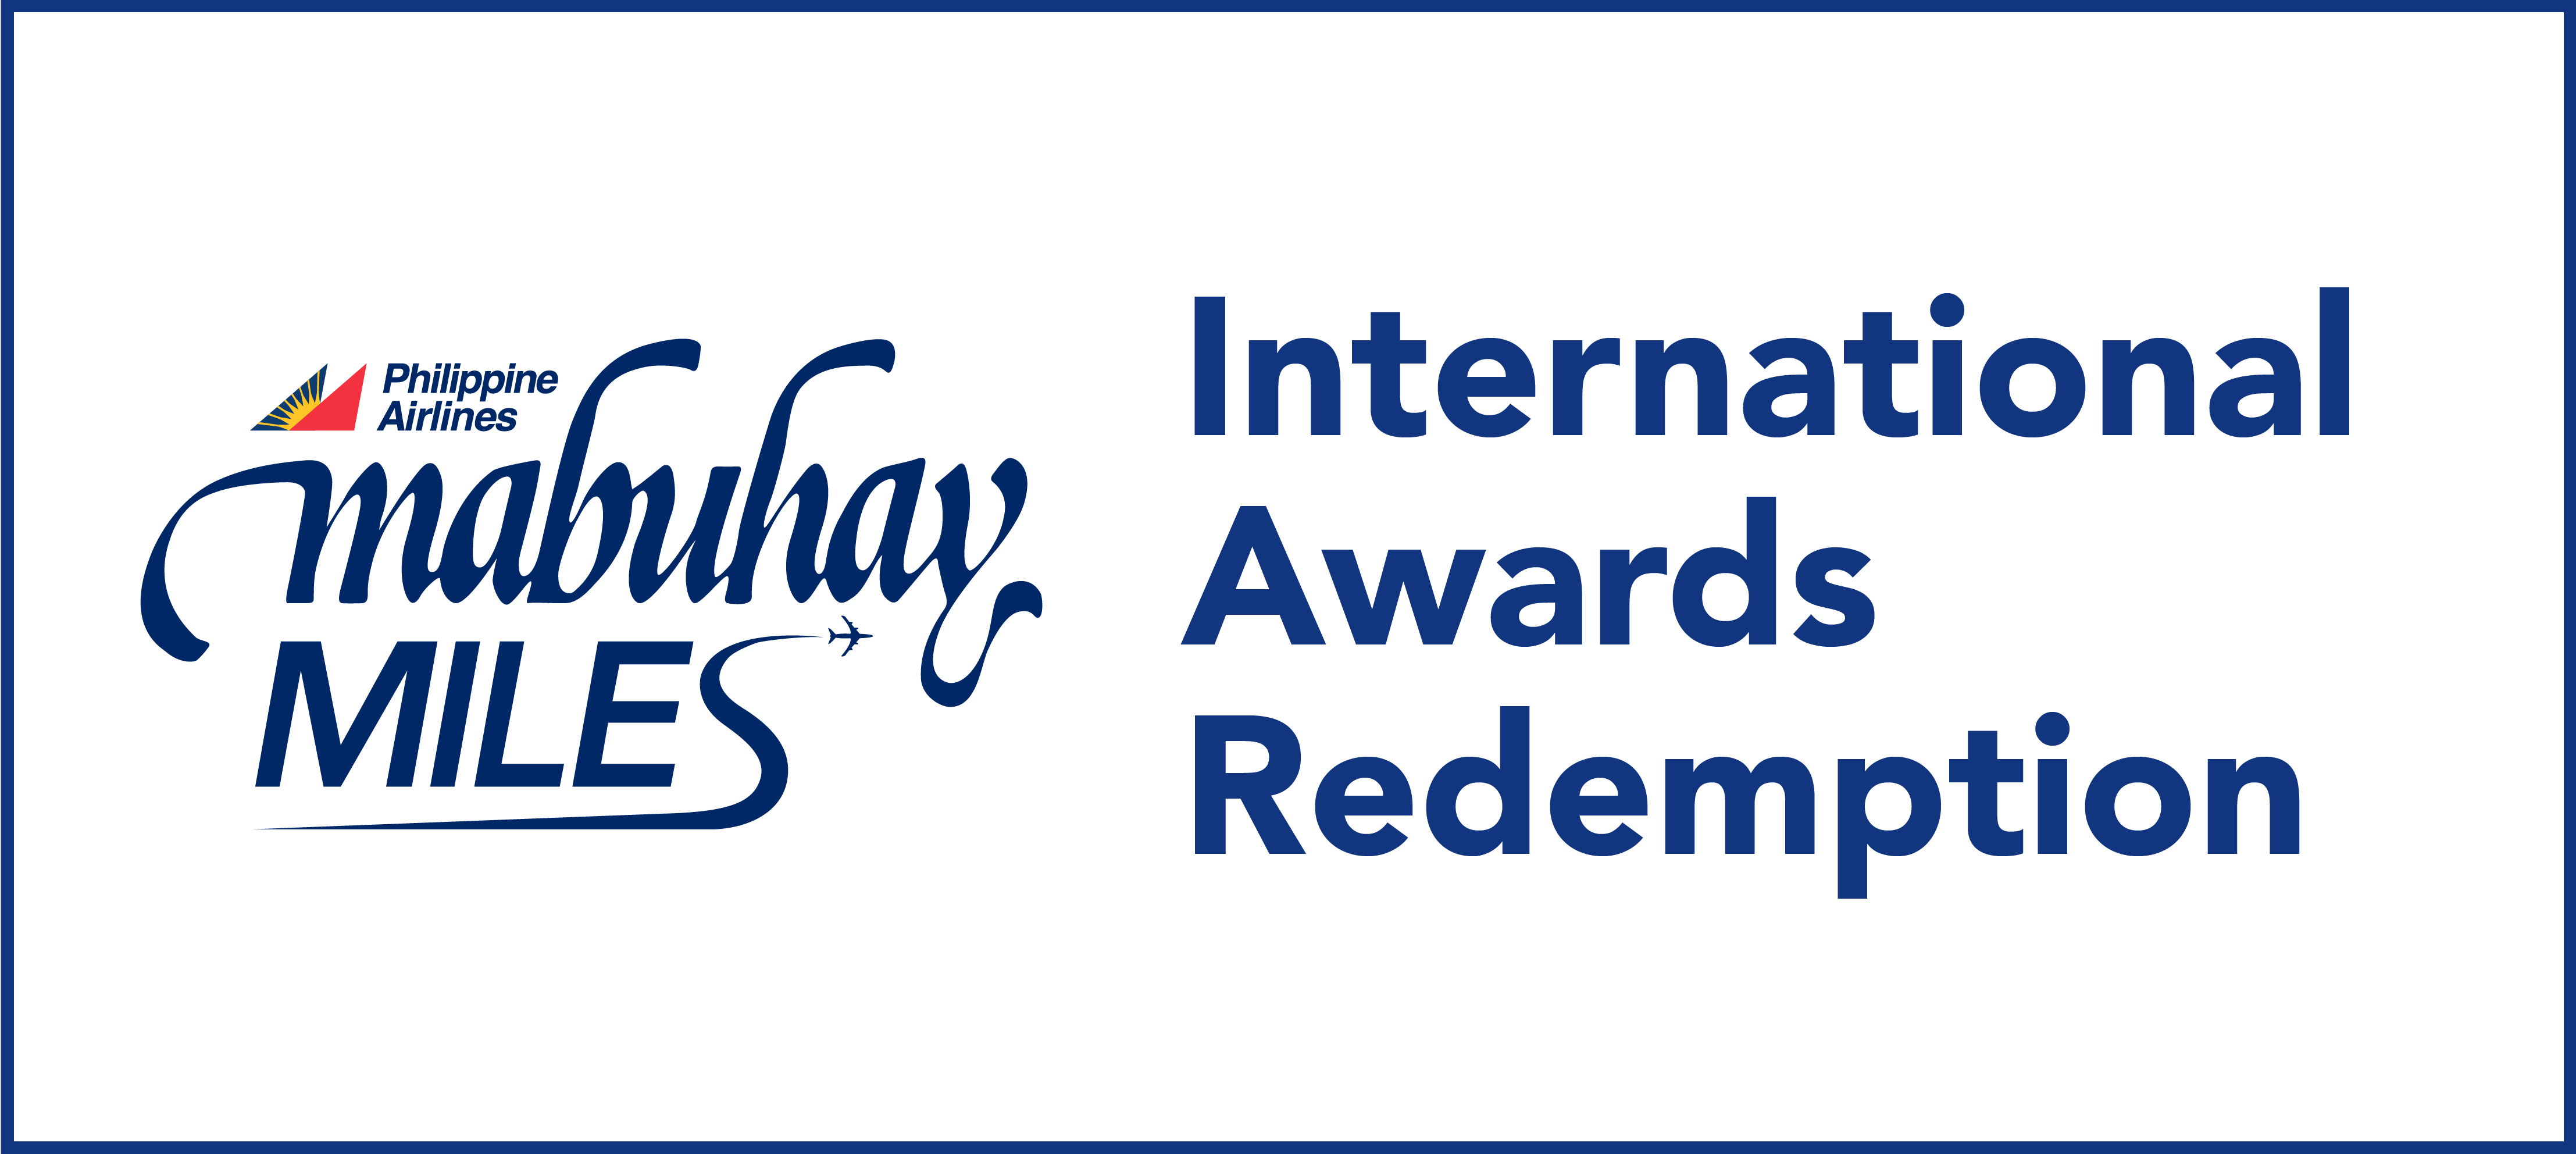 International-Award-Redemption!